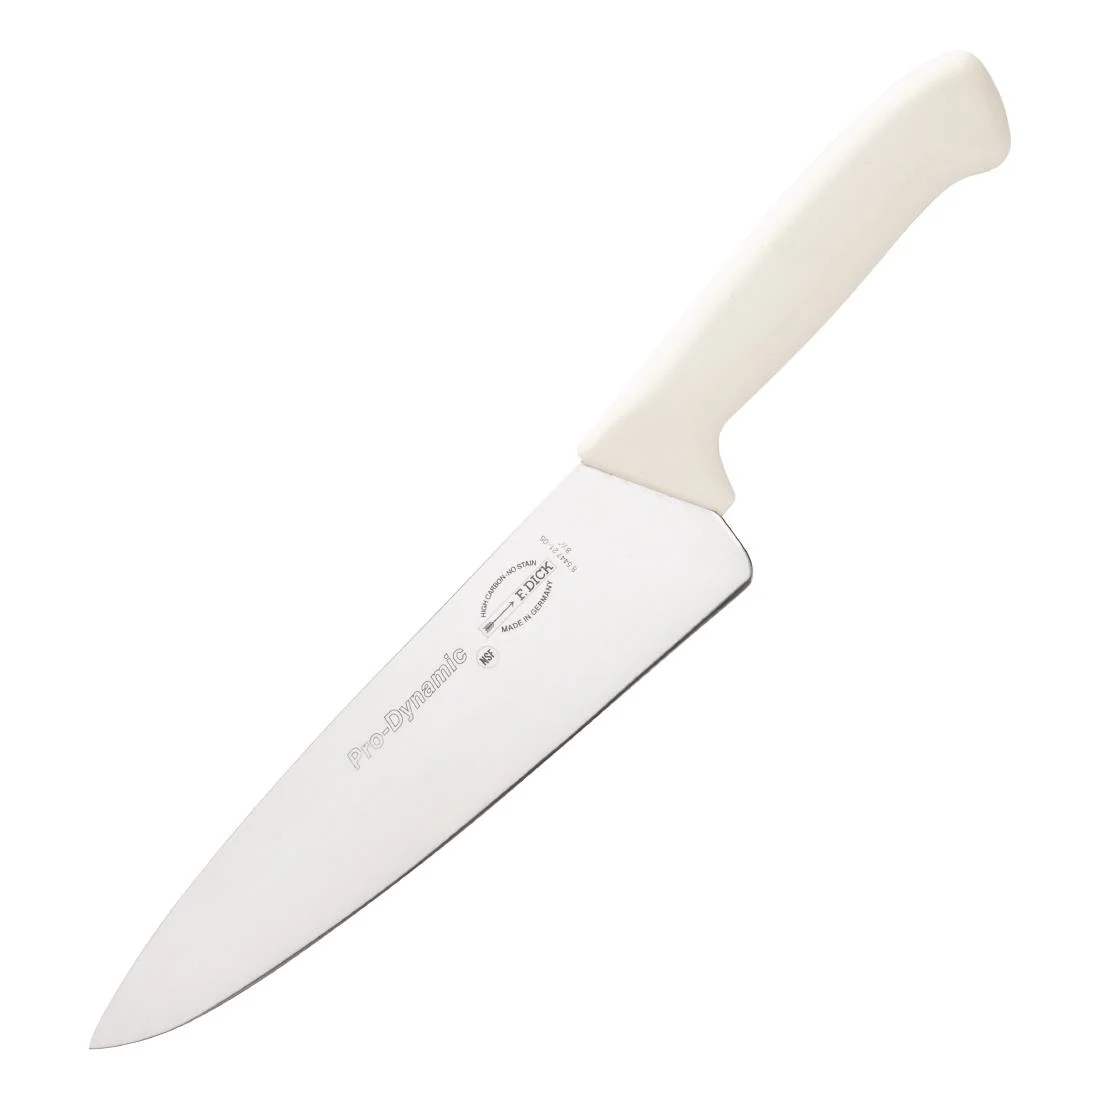 Couteau de cuisinier Dick Pro Dynamic HACCP blanc 215mm